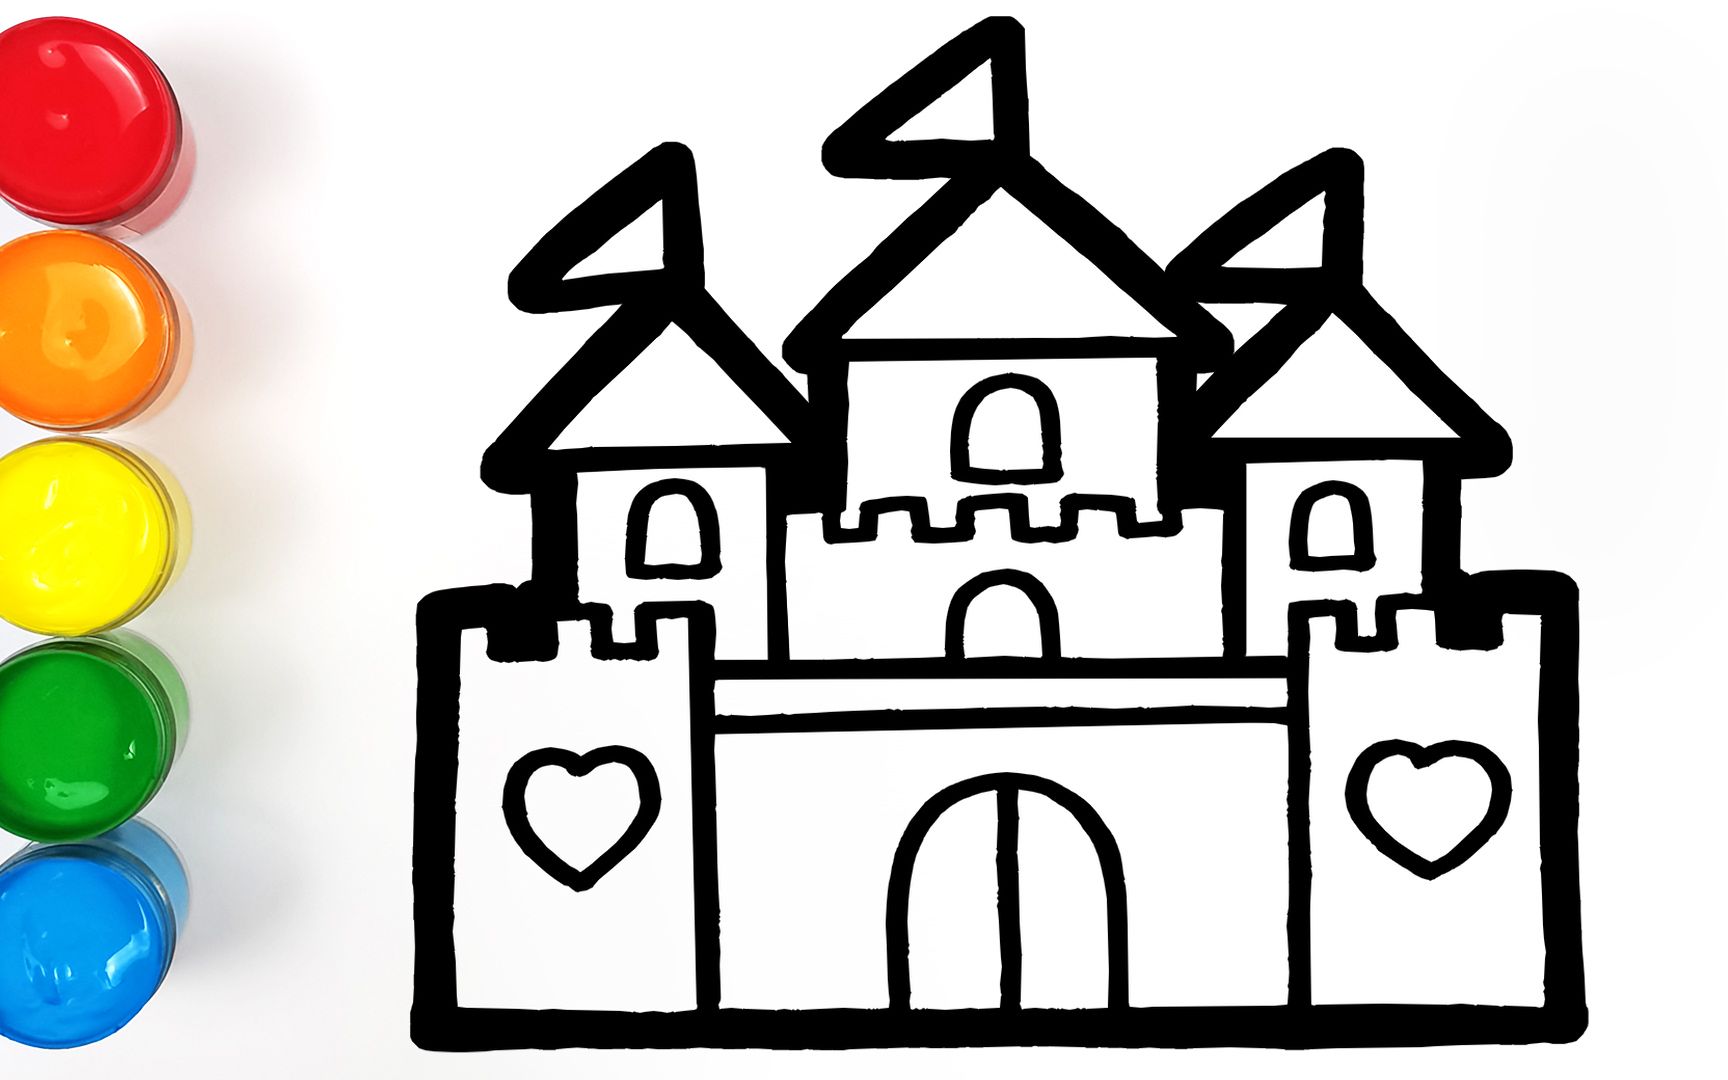 趣味填色儿童简笔画 如何画一座豪华的迪士尼童话城堡 烟花太美啦